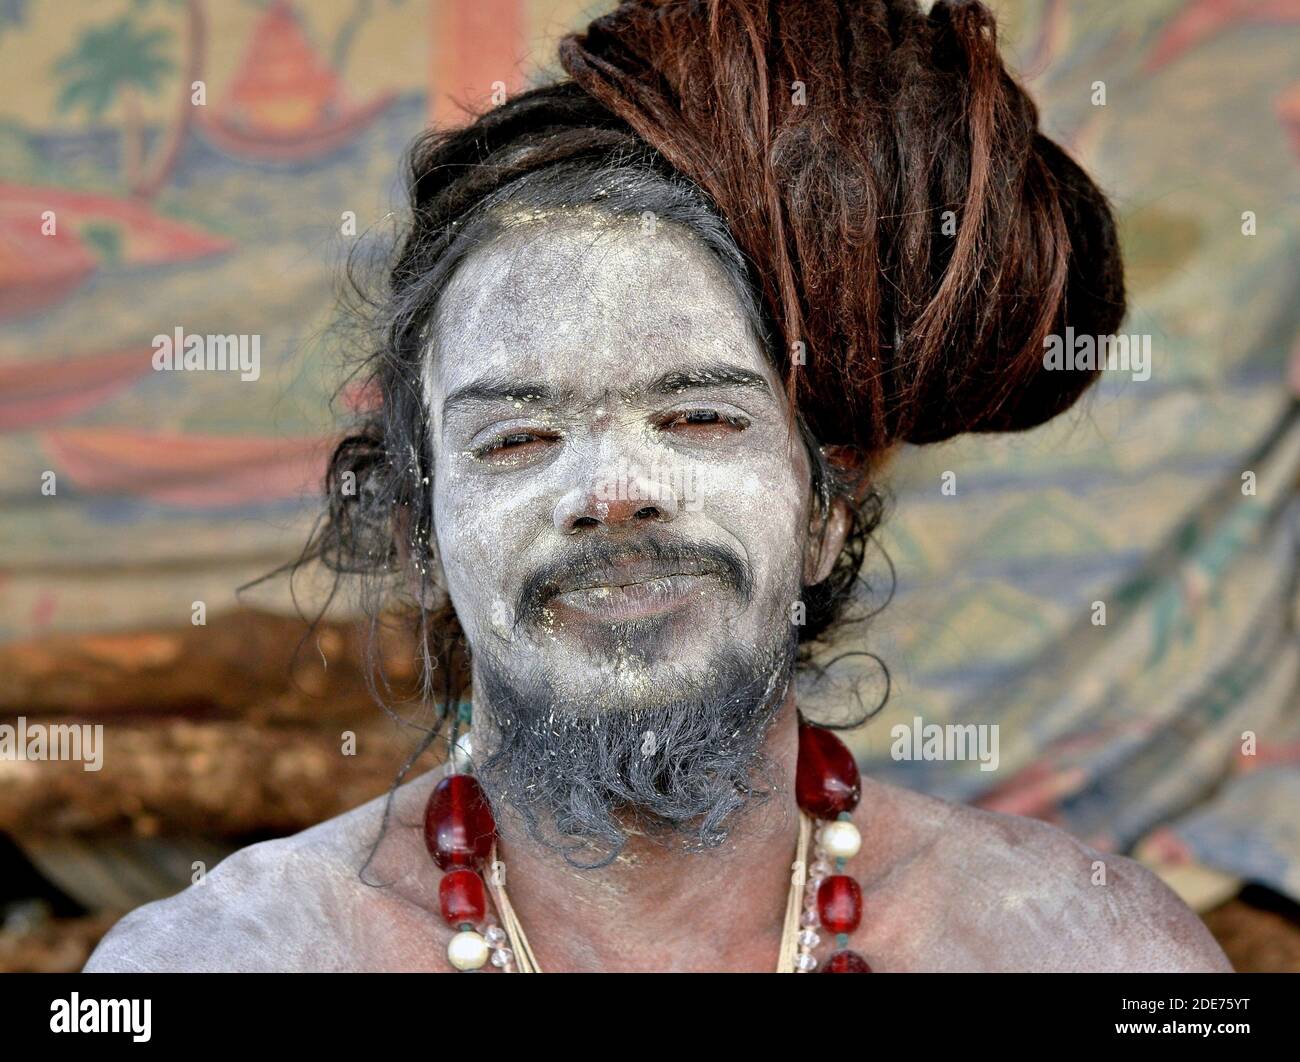 Der junge indische Hindu-Shaivite Sadhu und Yogi mit dem Schreck und der heiligen weißen Asche (Vibhuti) auf seinem Gesicht, seinem Bart und seinen Schultern posiert für die Kamera. Stockfoto